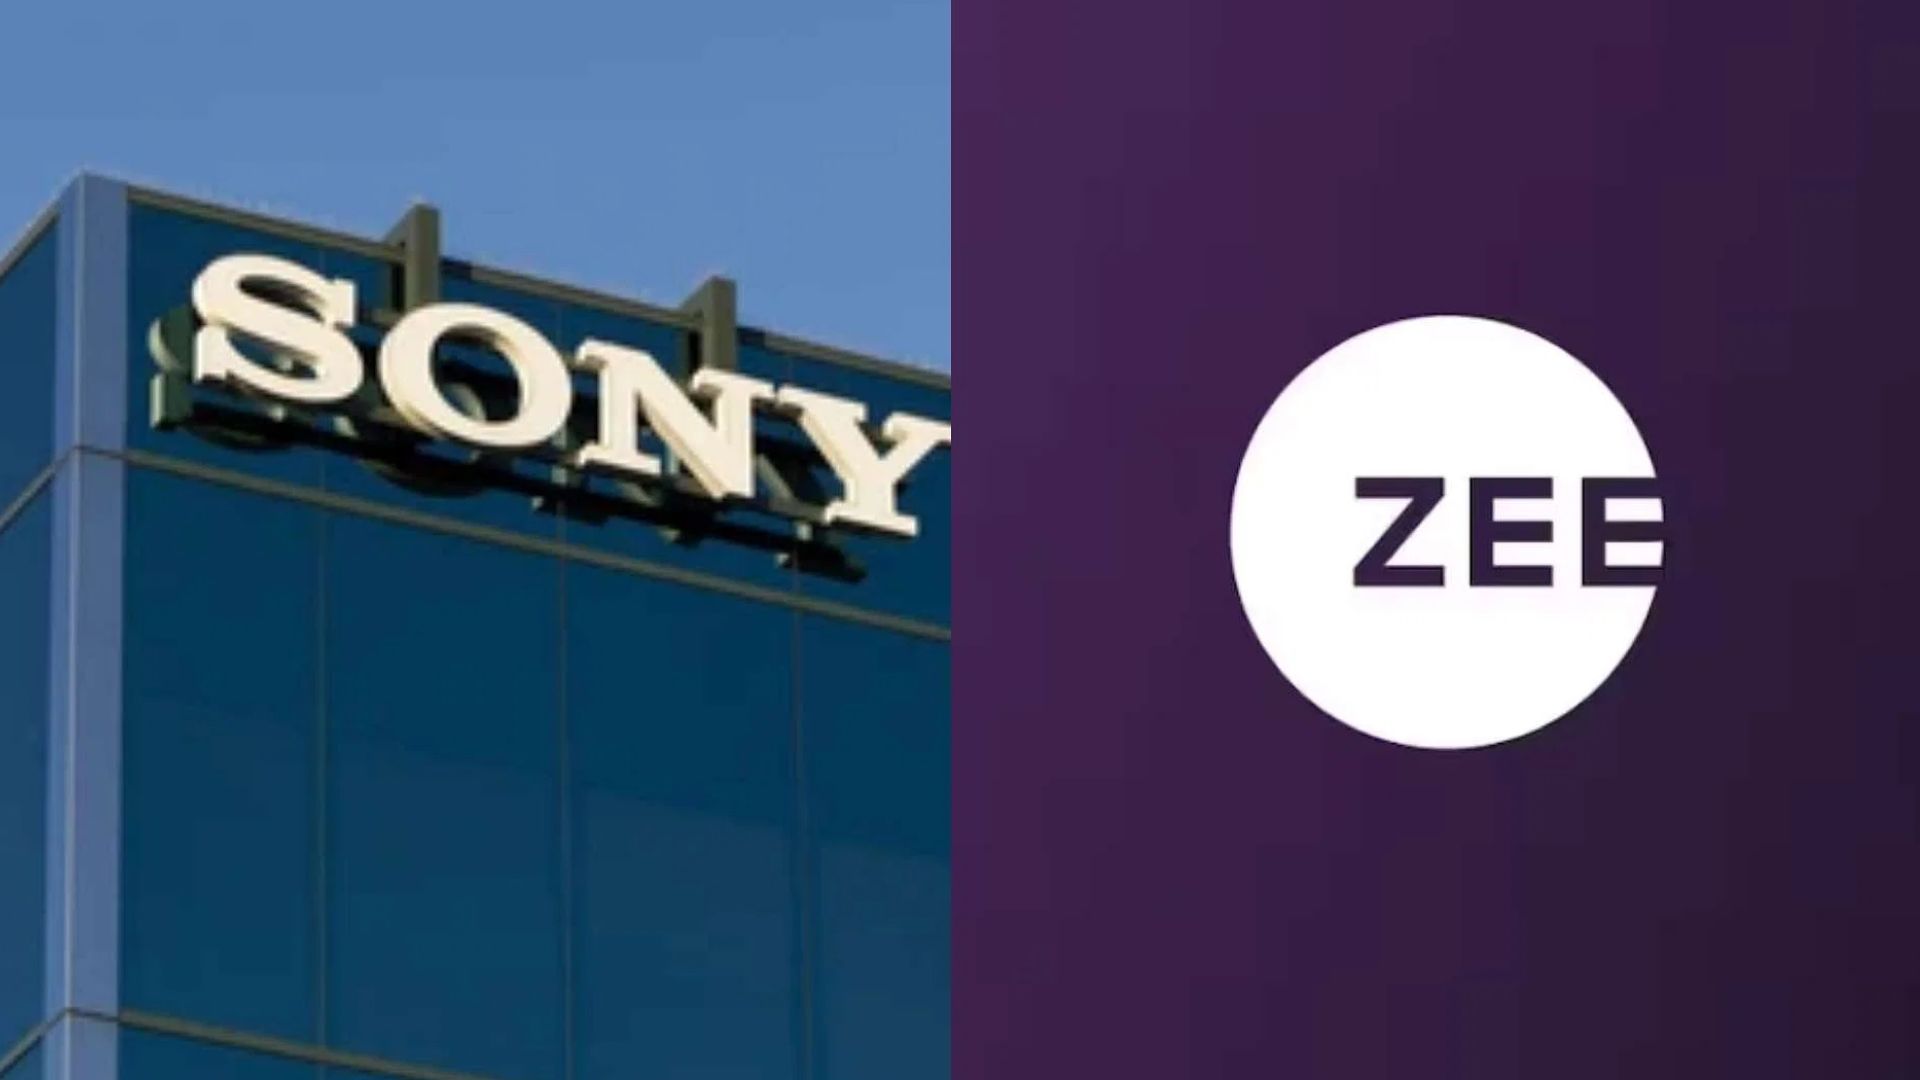 ZEE ने विलय रद्द करने के लिए SONY से नौ करोड़ अमेरिकी डॉलर का मांगा समाप्ति शुल्क 